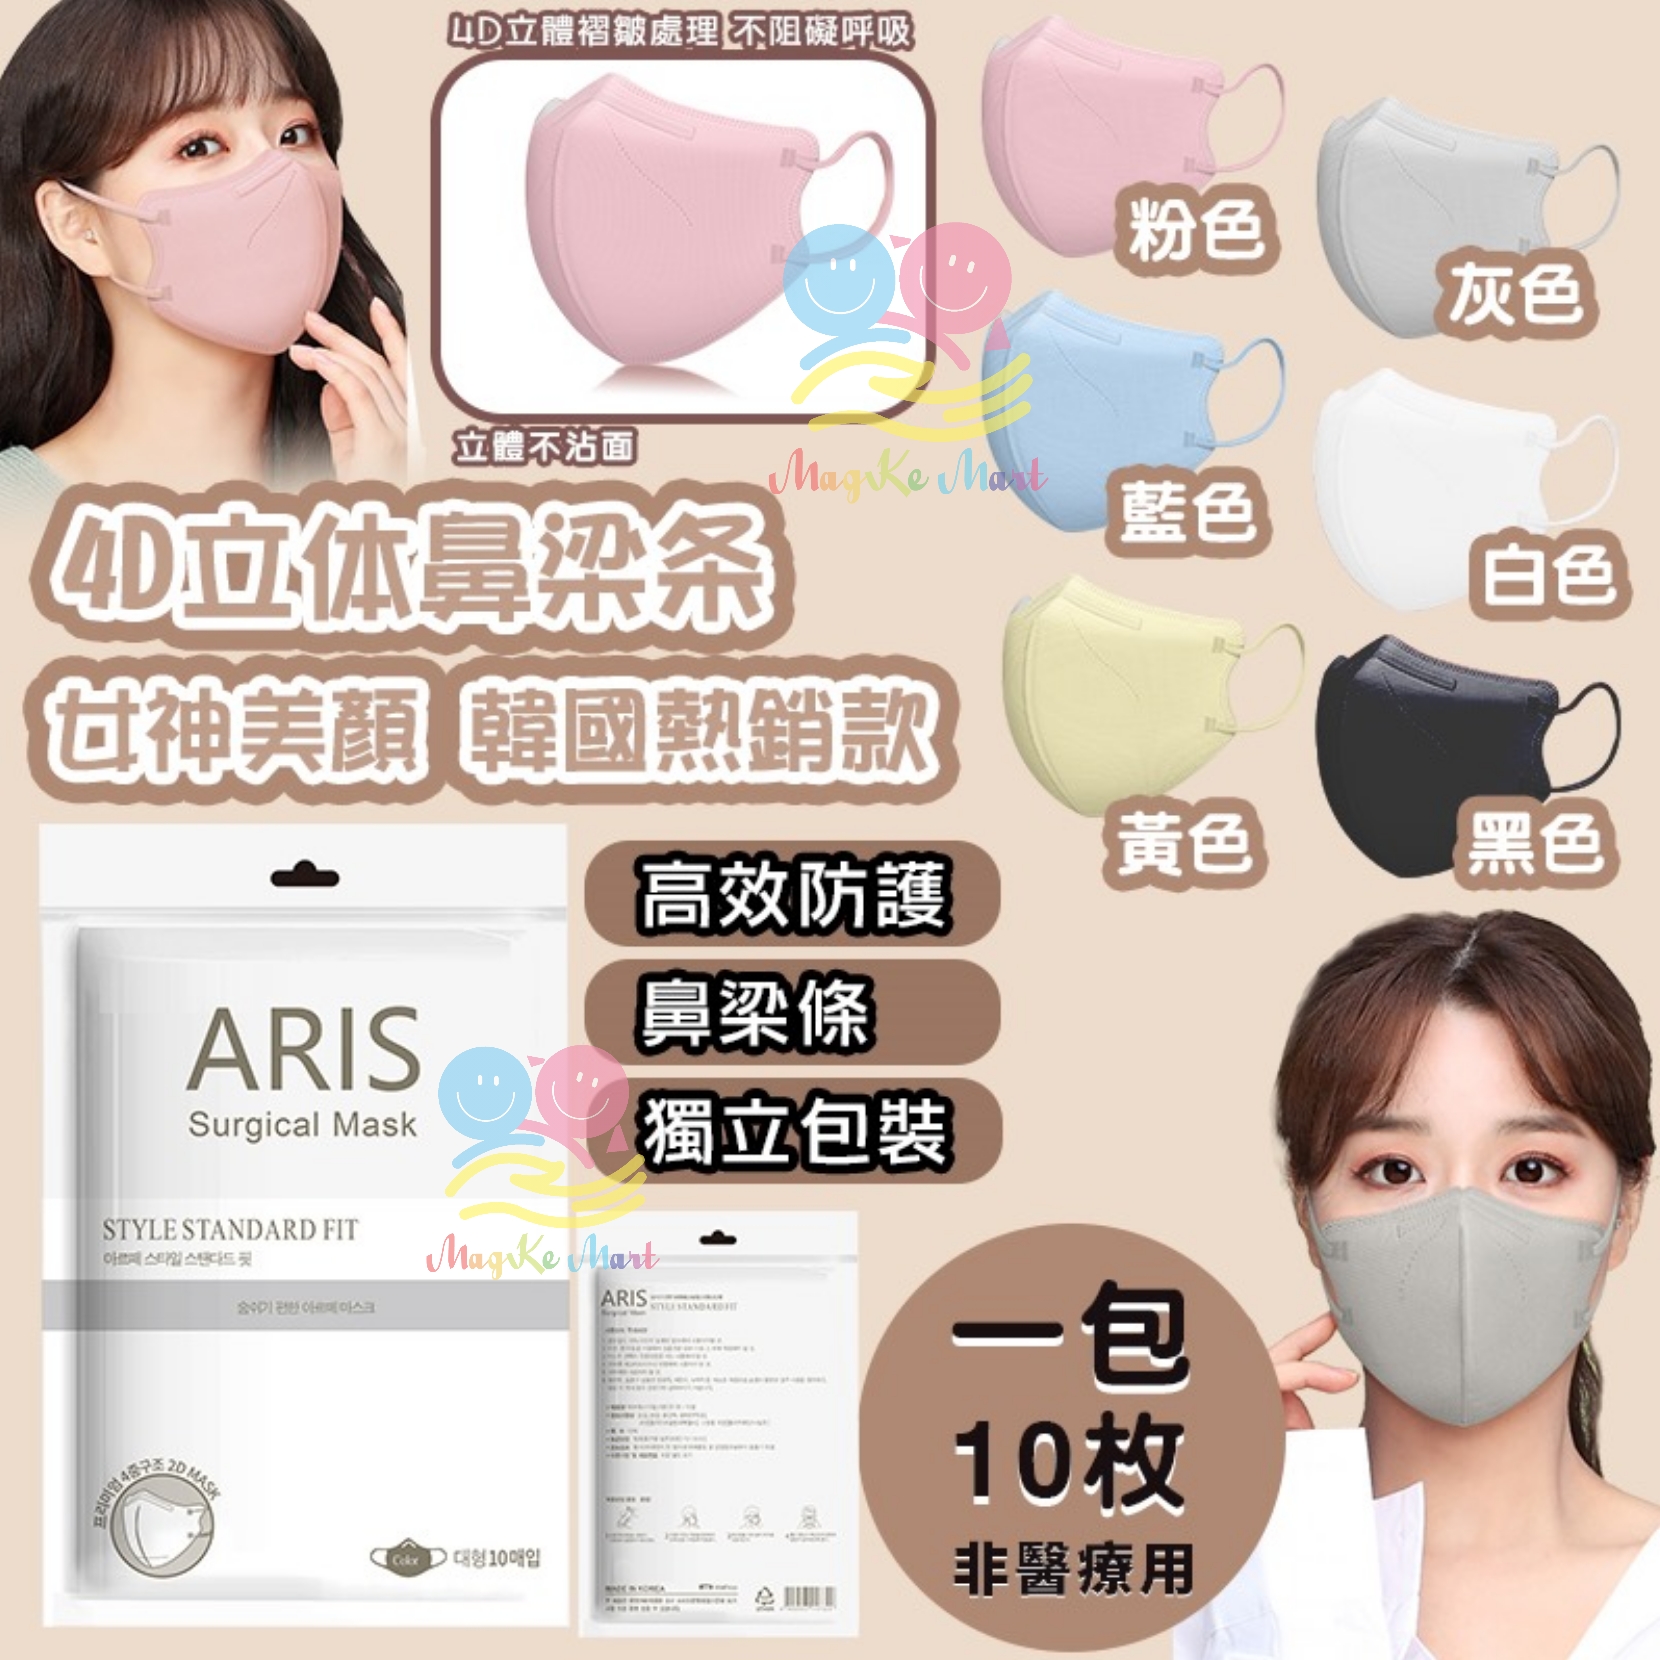 韓國 ARIS KF94 4D立體防護成人口罩(1套3包共30片)(非獨立包裝) (E) 白色